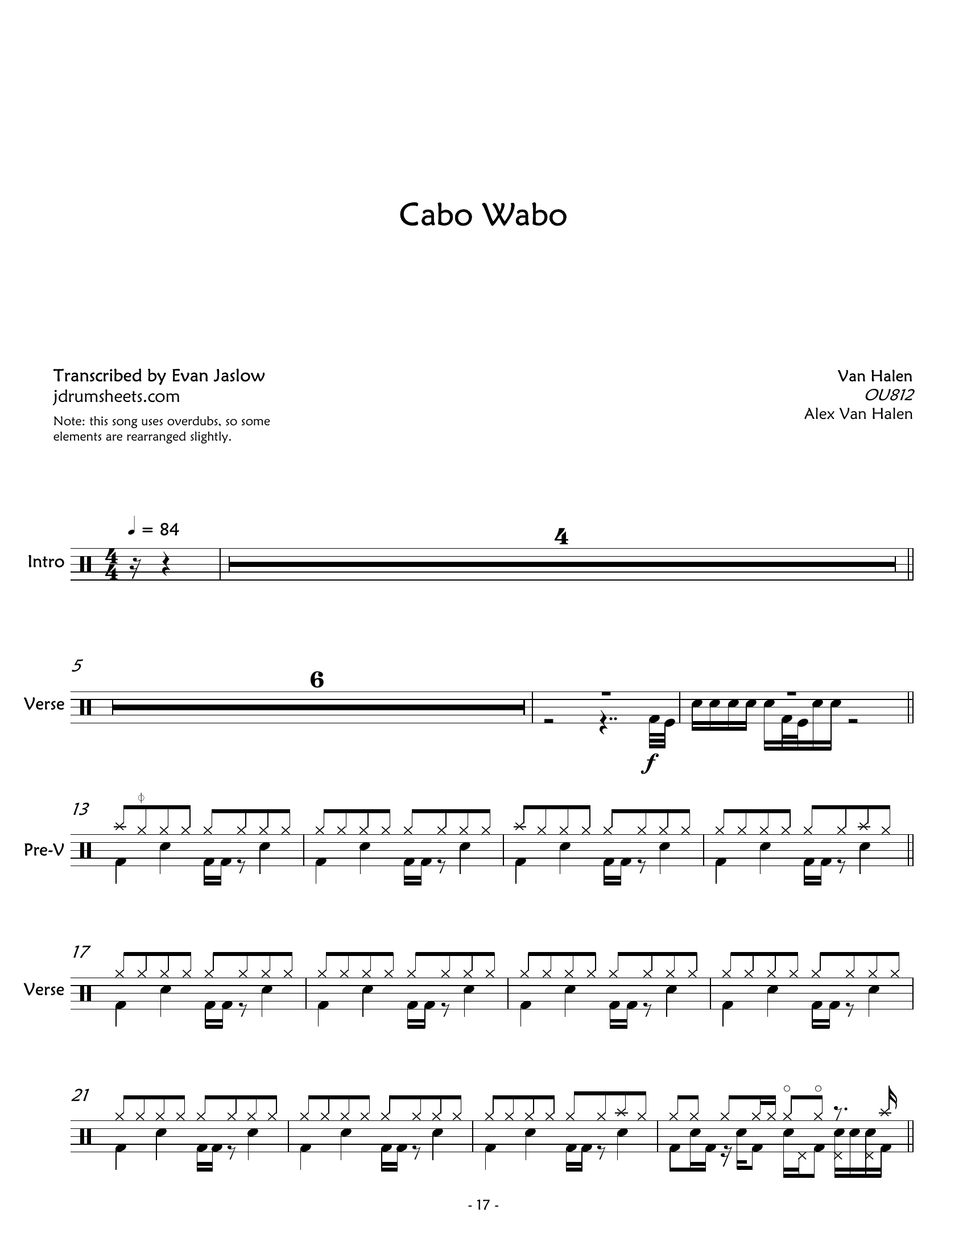 Van Halen - Cabo Wabo by Evan Aria Serenity